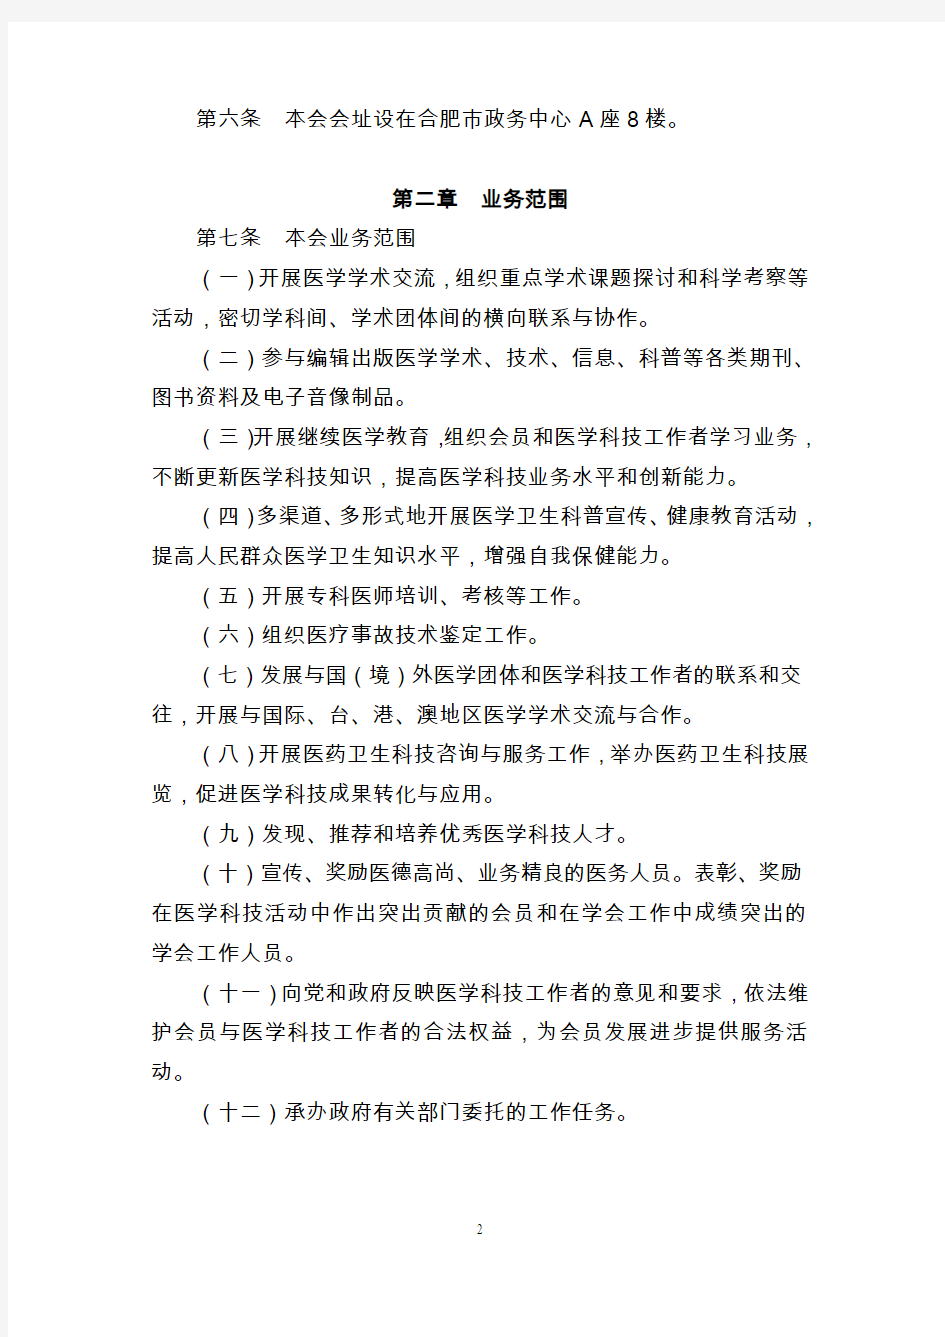 安徽省医学会章程(草案)-合肥市卫生科技教育服务平台